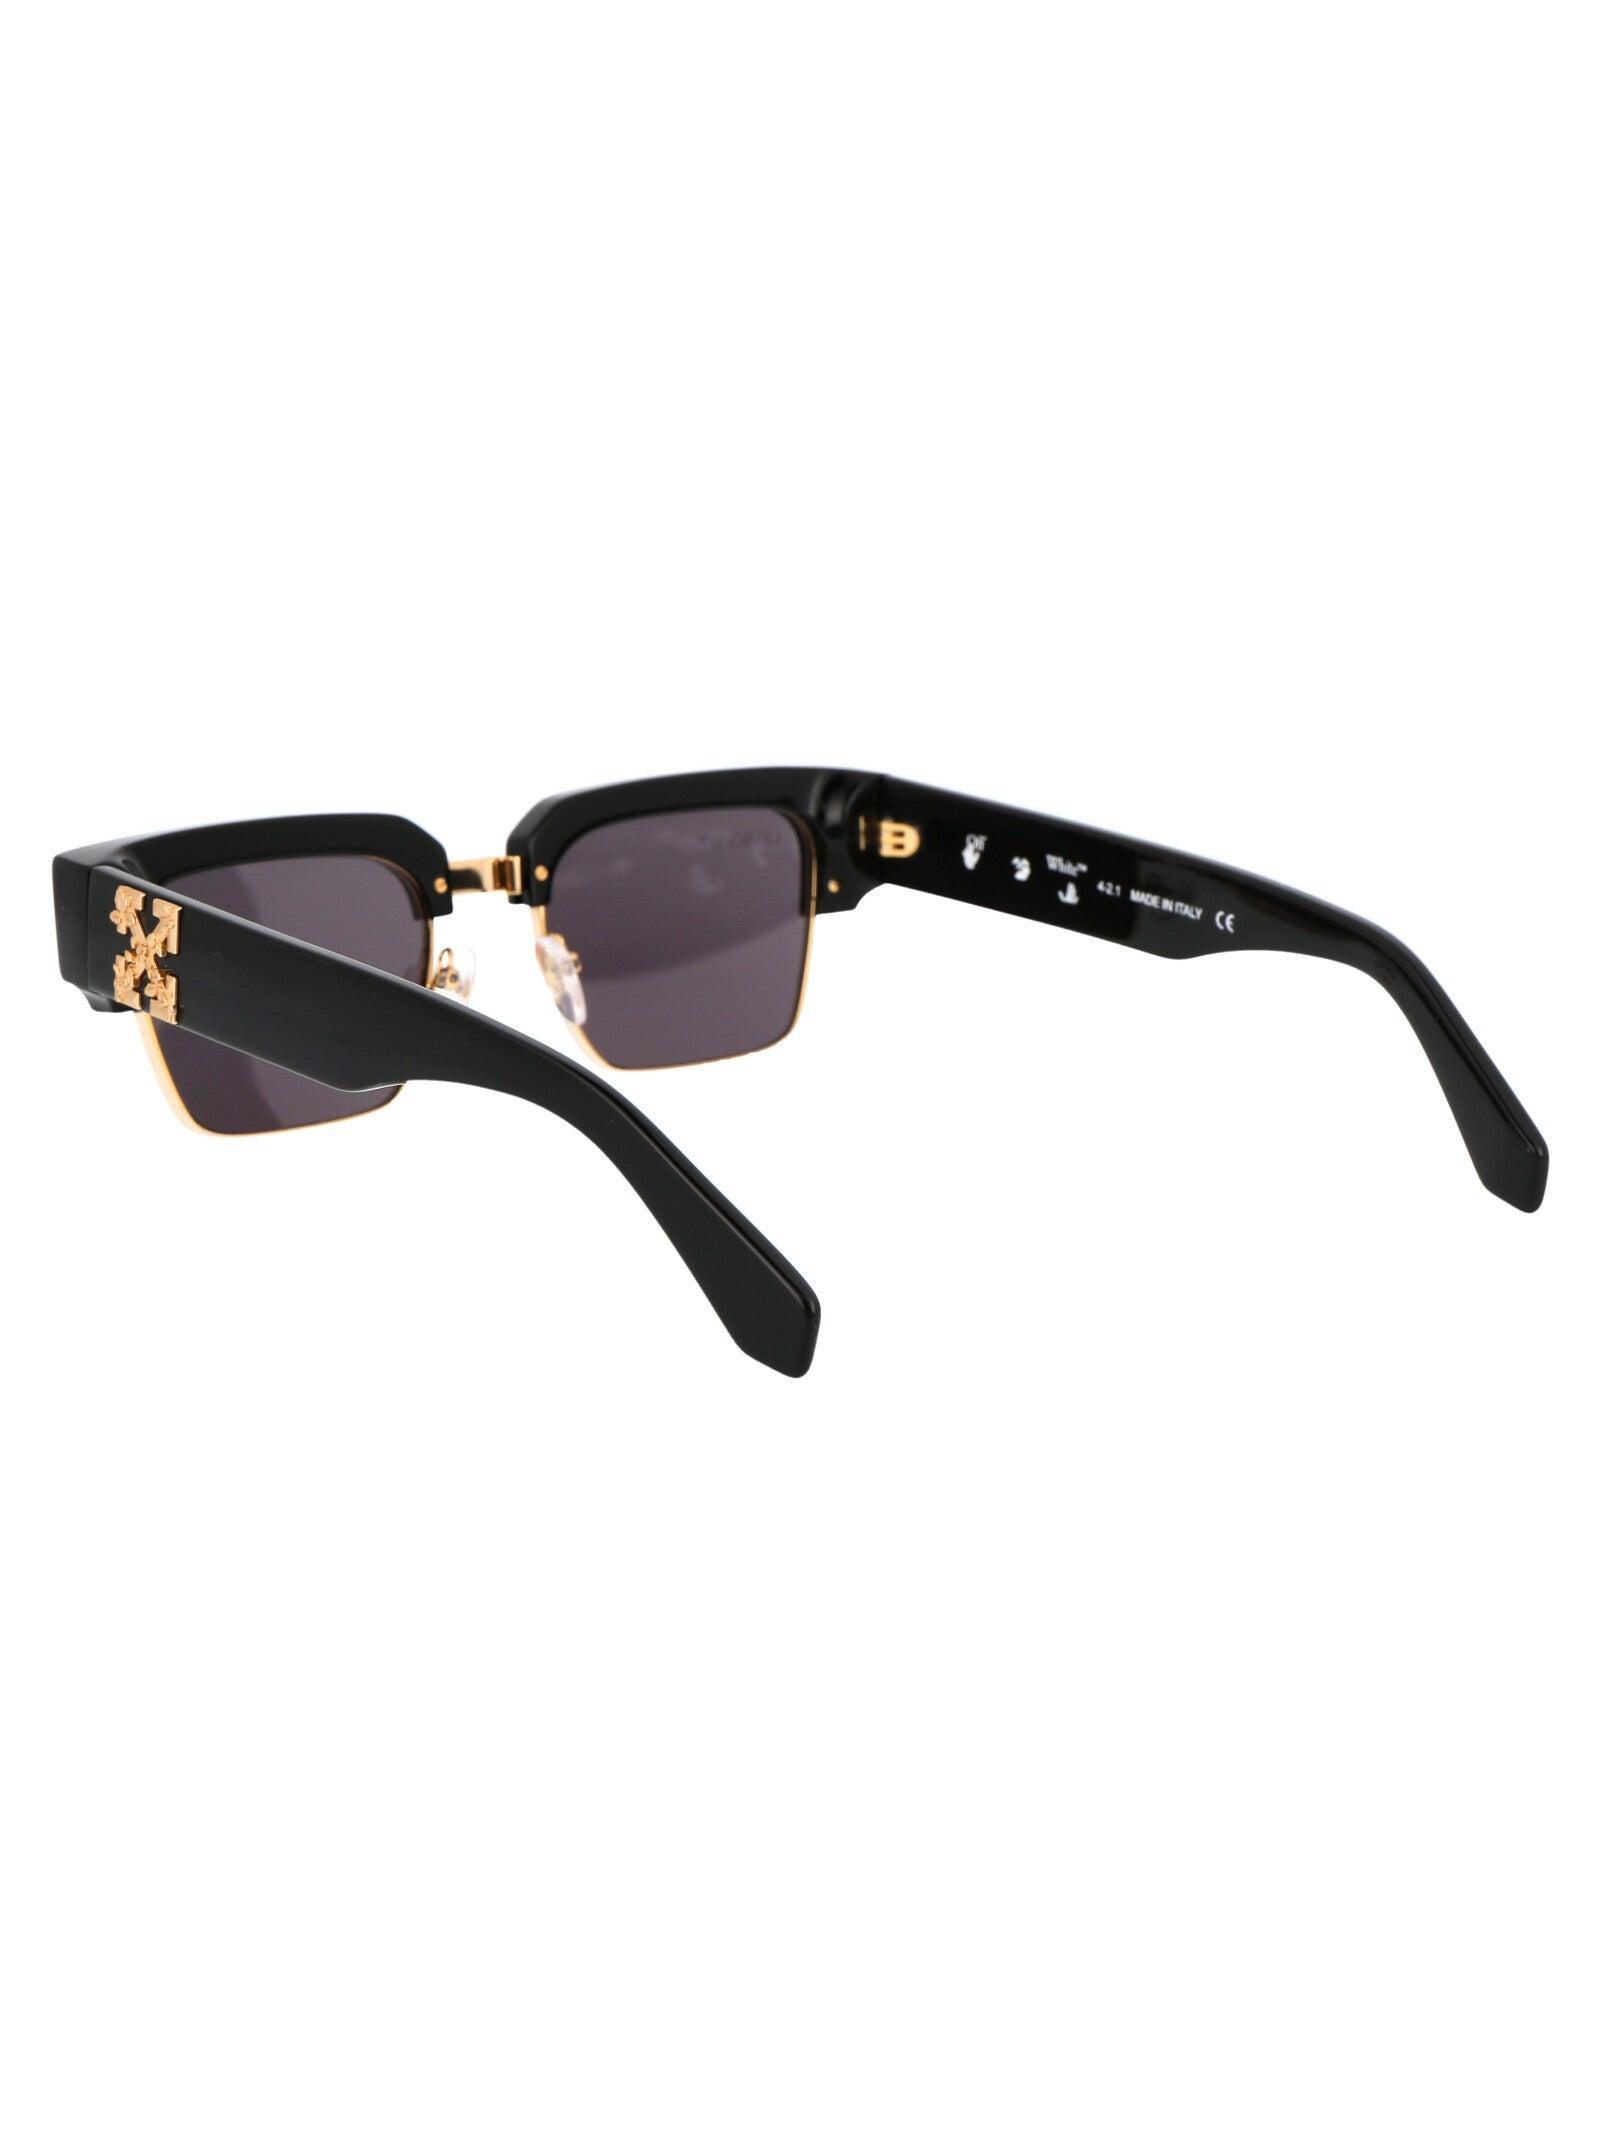 Louis Vuitton Abloh 1.1 Millionaires Sunglasses Black for Sale in